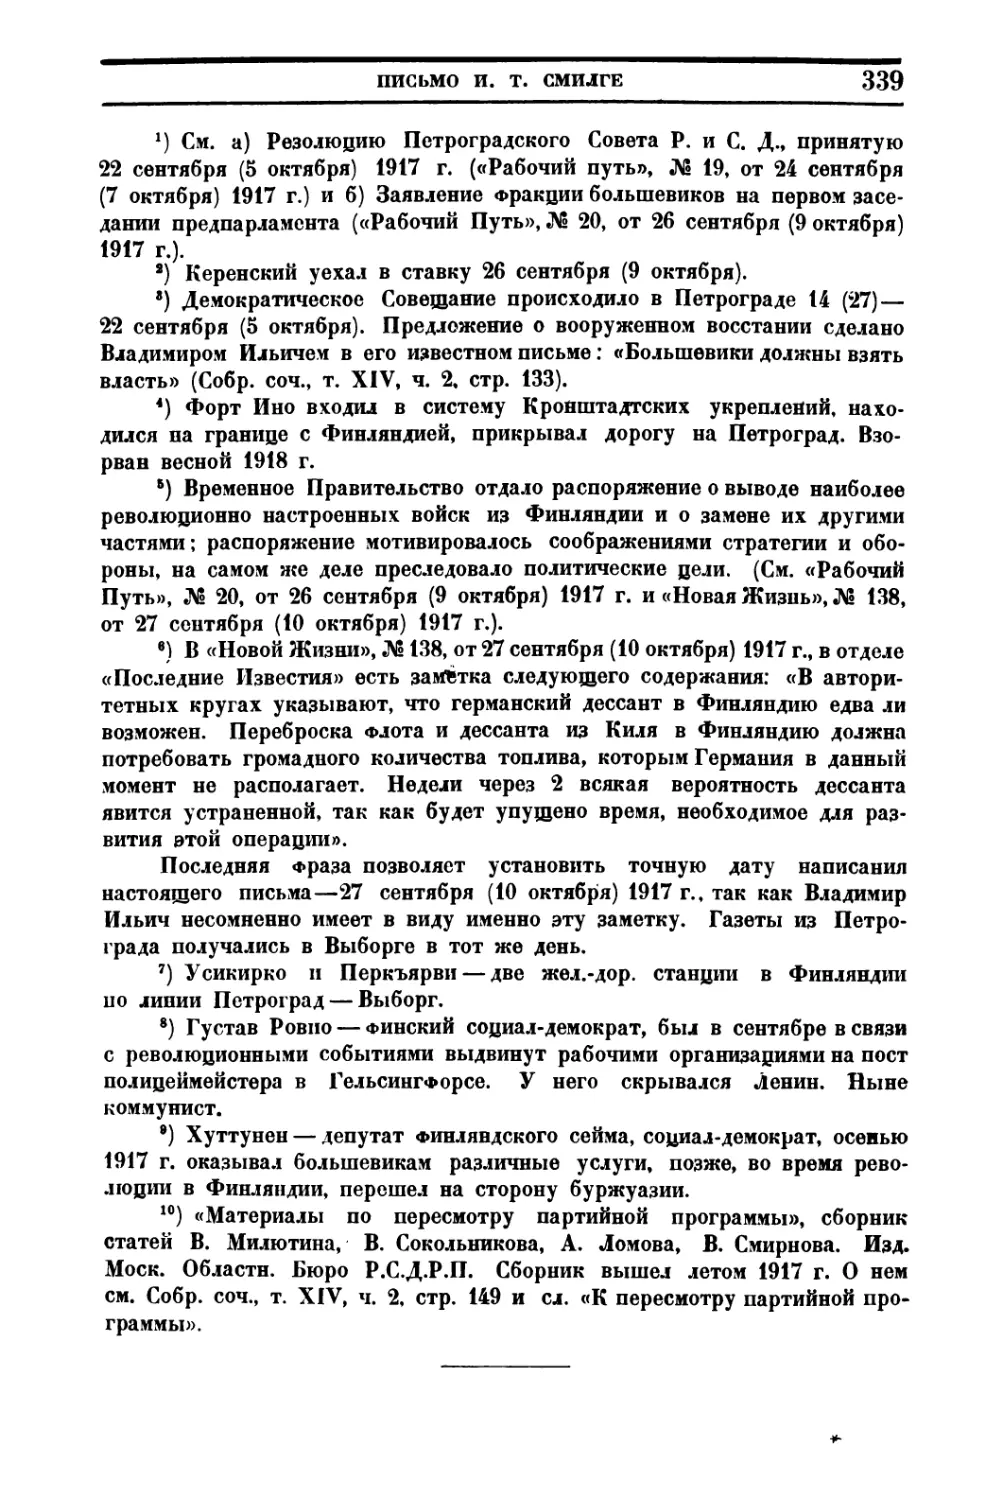 2. » Письмо к товарищам большевикам, участвующим на областном съезде советов Северной области